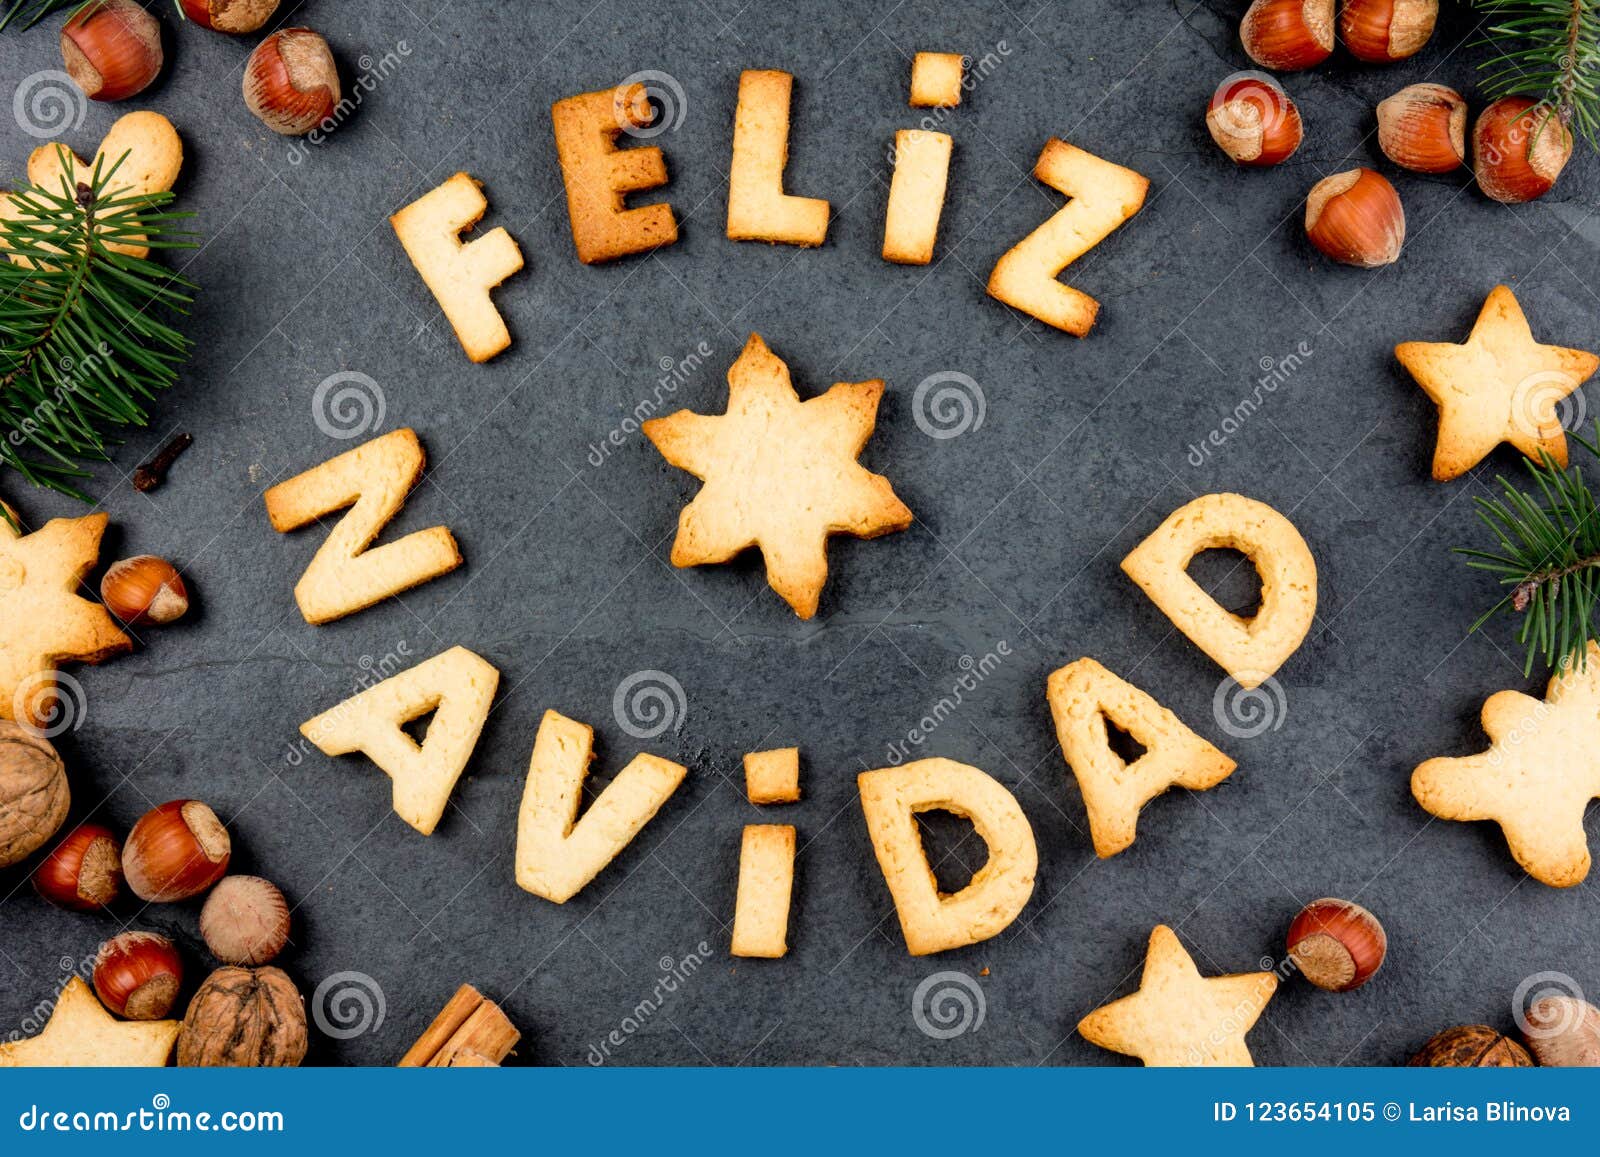 FELIZ NAVIDAD COOKIES. Words Merry Christmas En Spanish with Baked ...